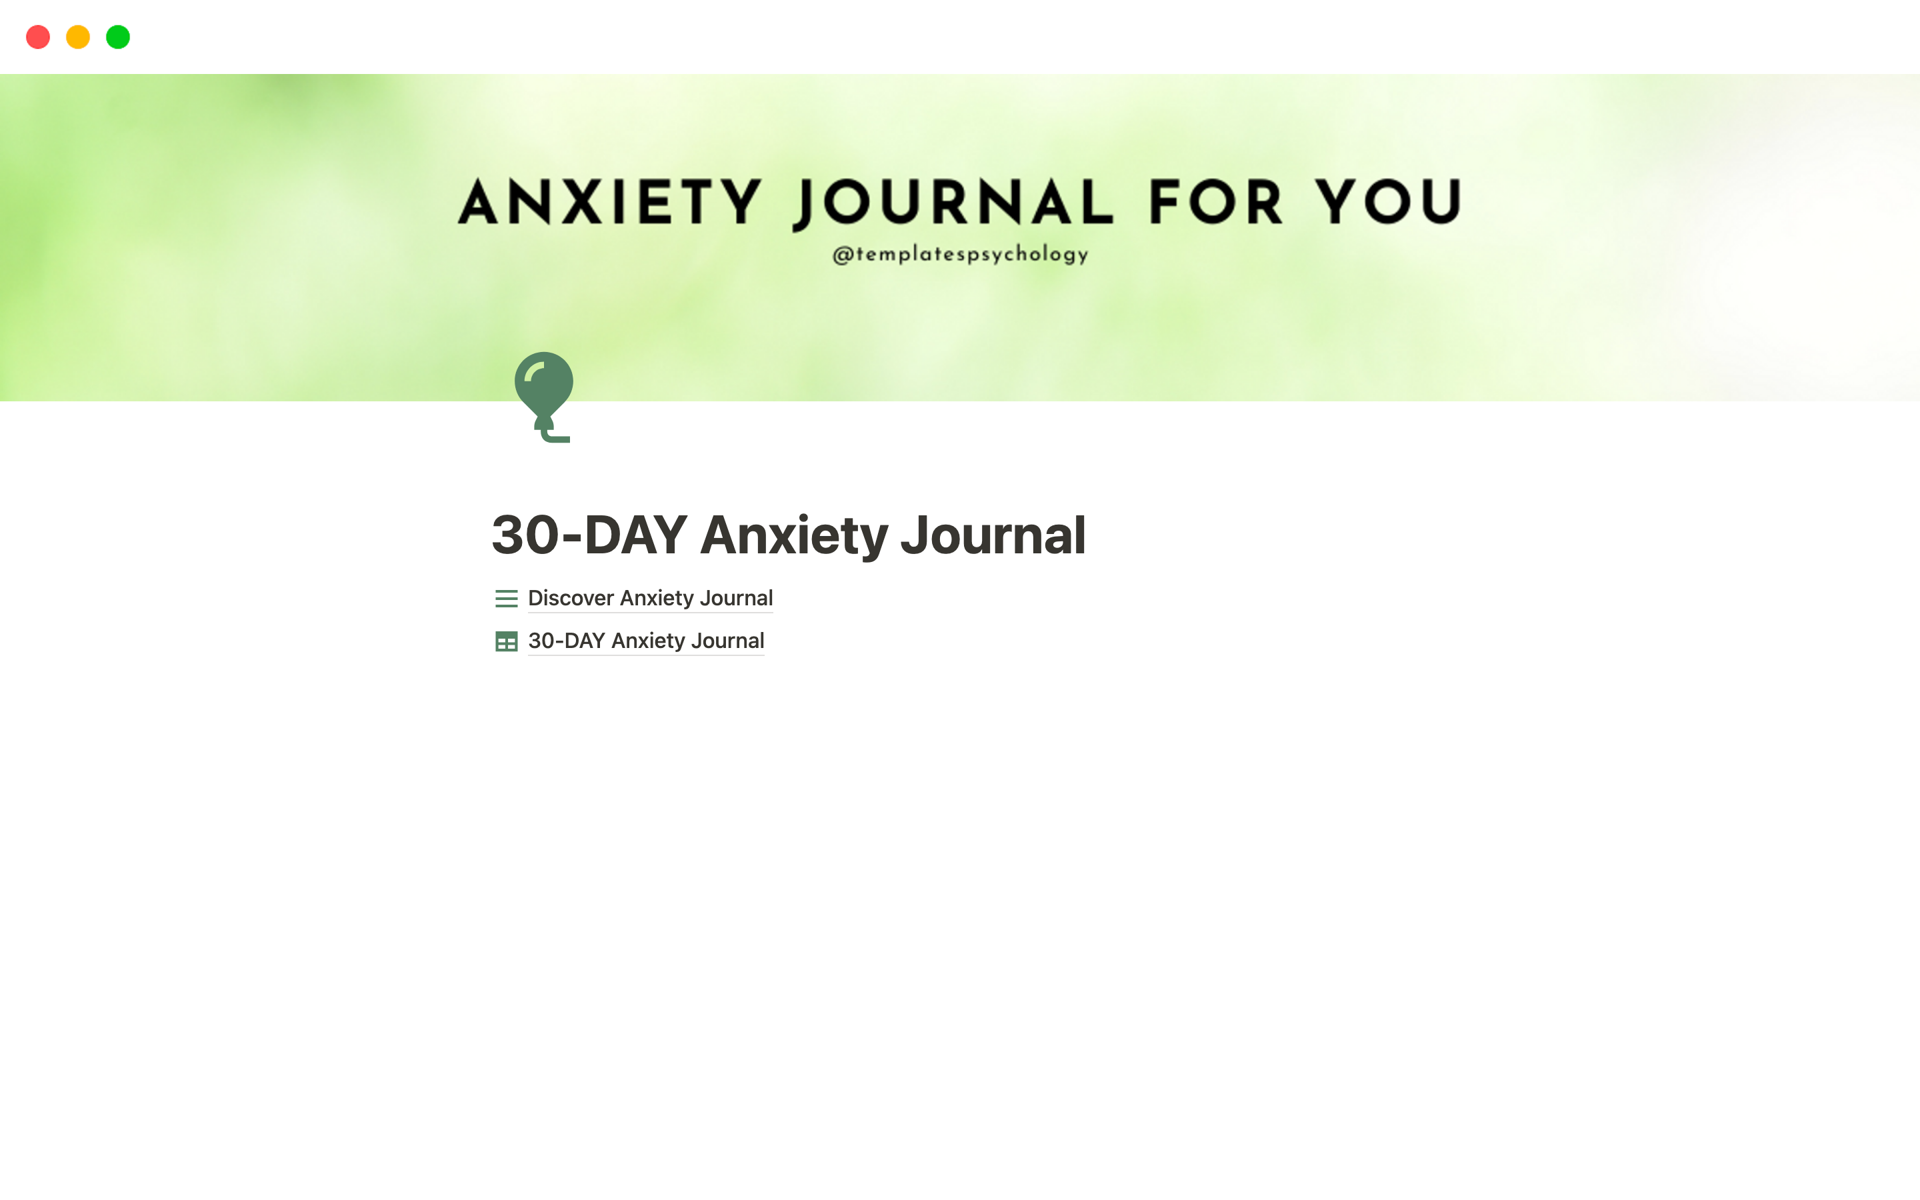 Vista previa de una plantilla para 30-DAY Anxiety Journal